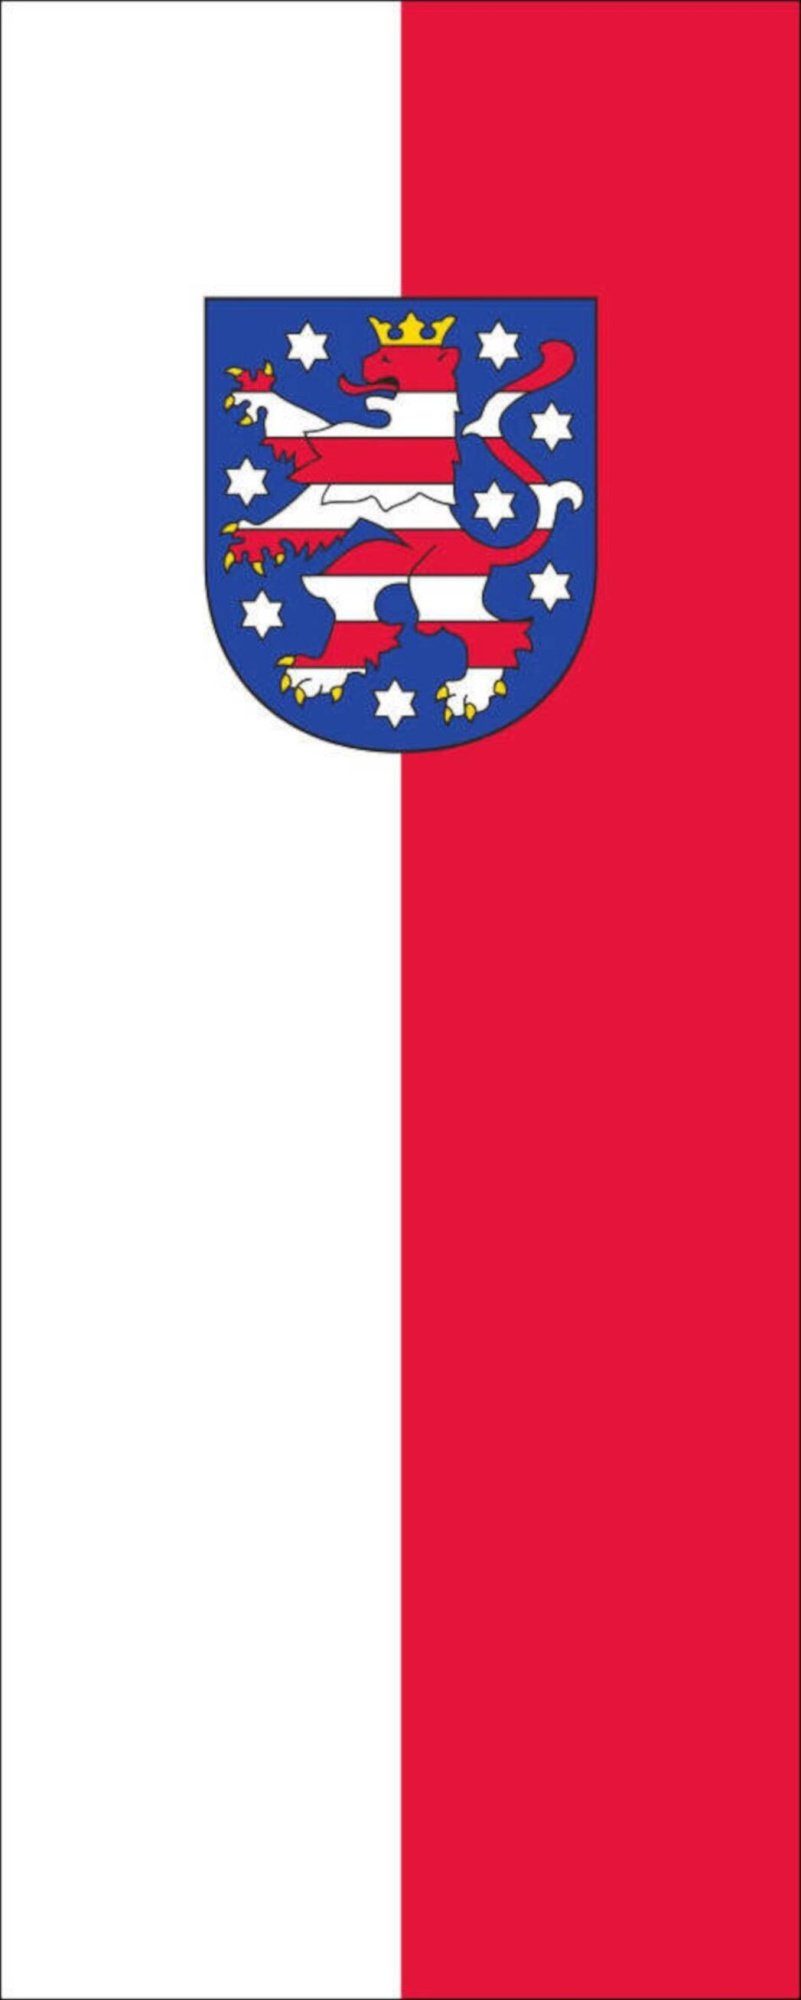 flaggenmeer Flagge Flagge Thüringen mit Wappen 110 g/m² Hochformat